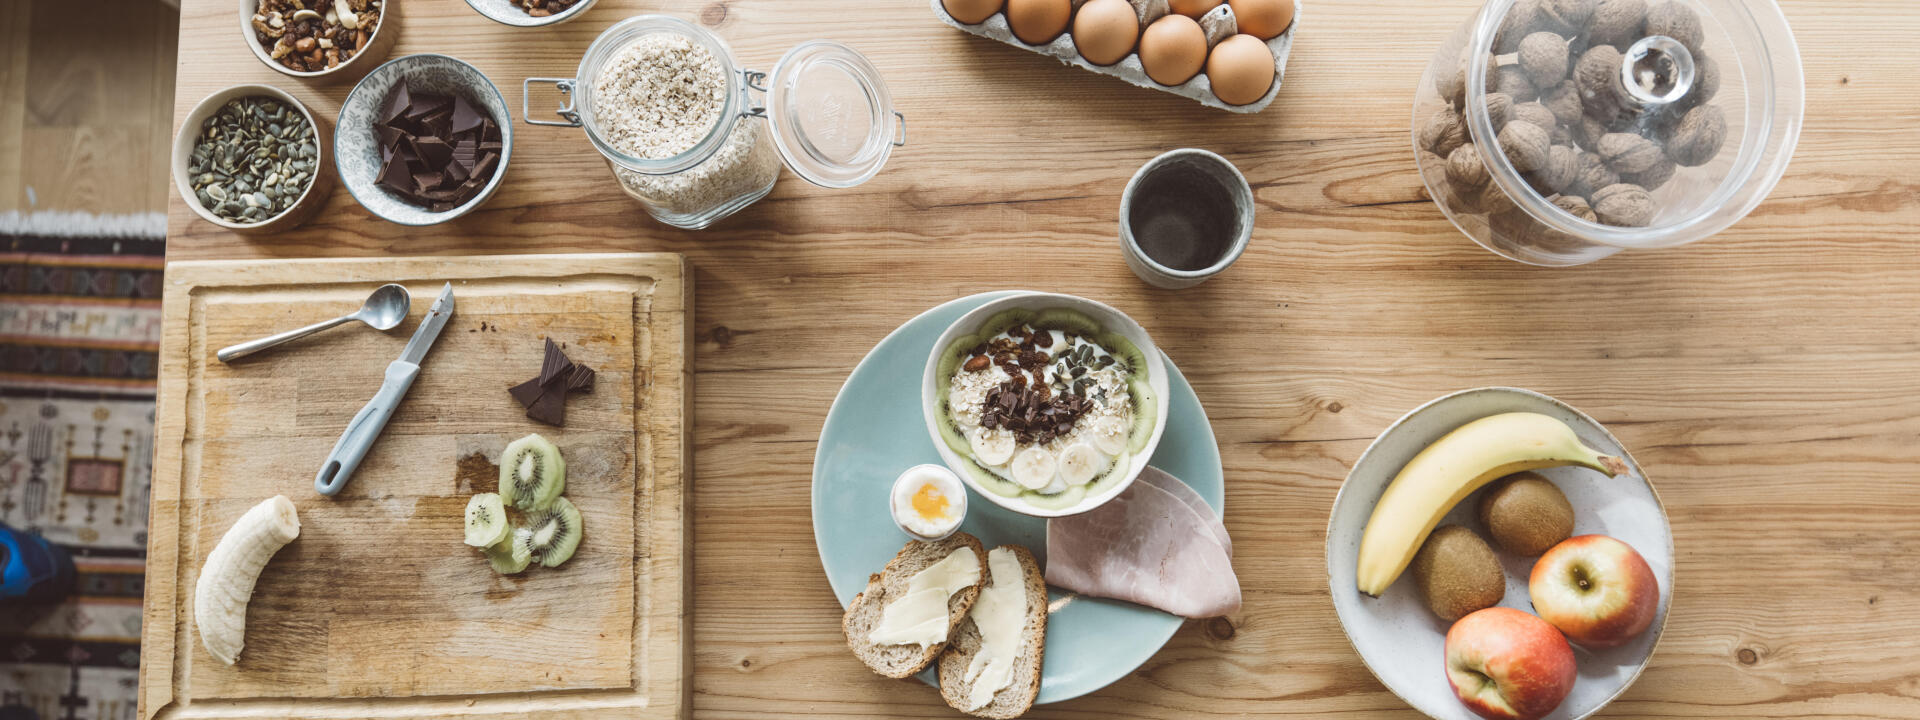 Petit-déjeuner et déjeuner healthy : des idées de recettes saines